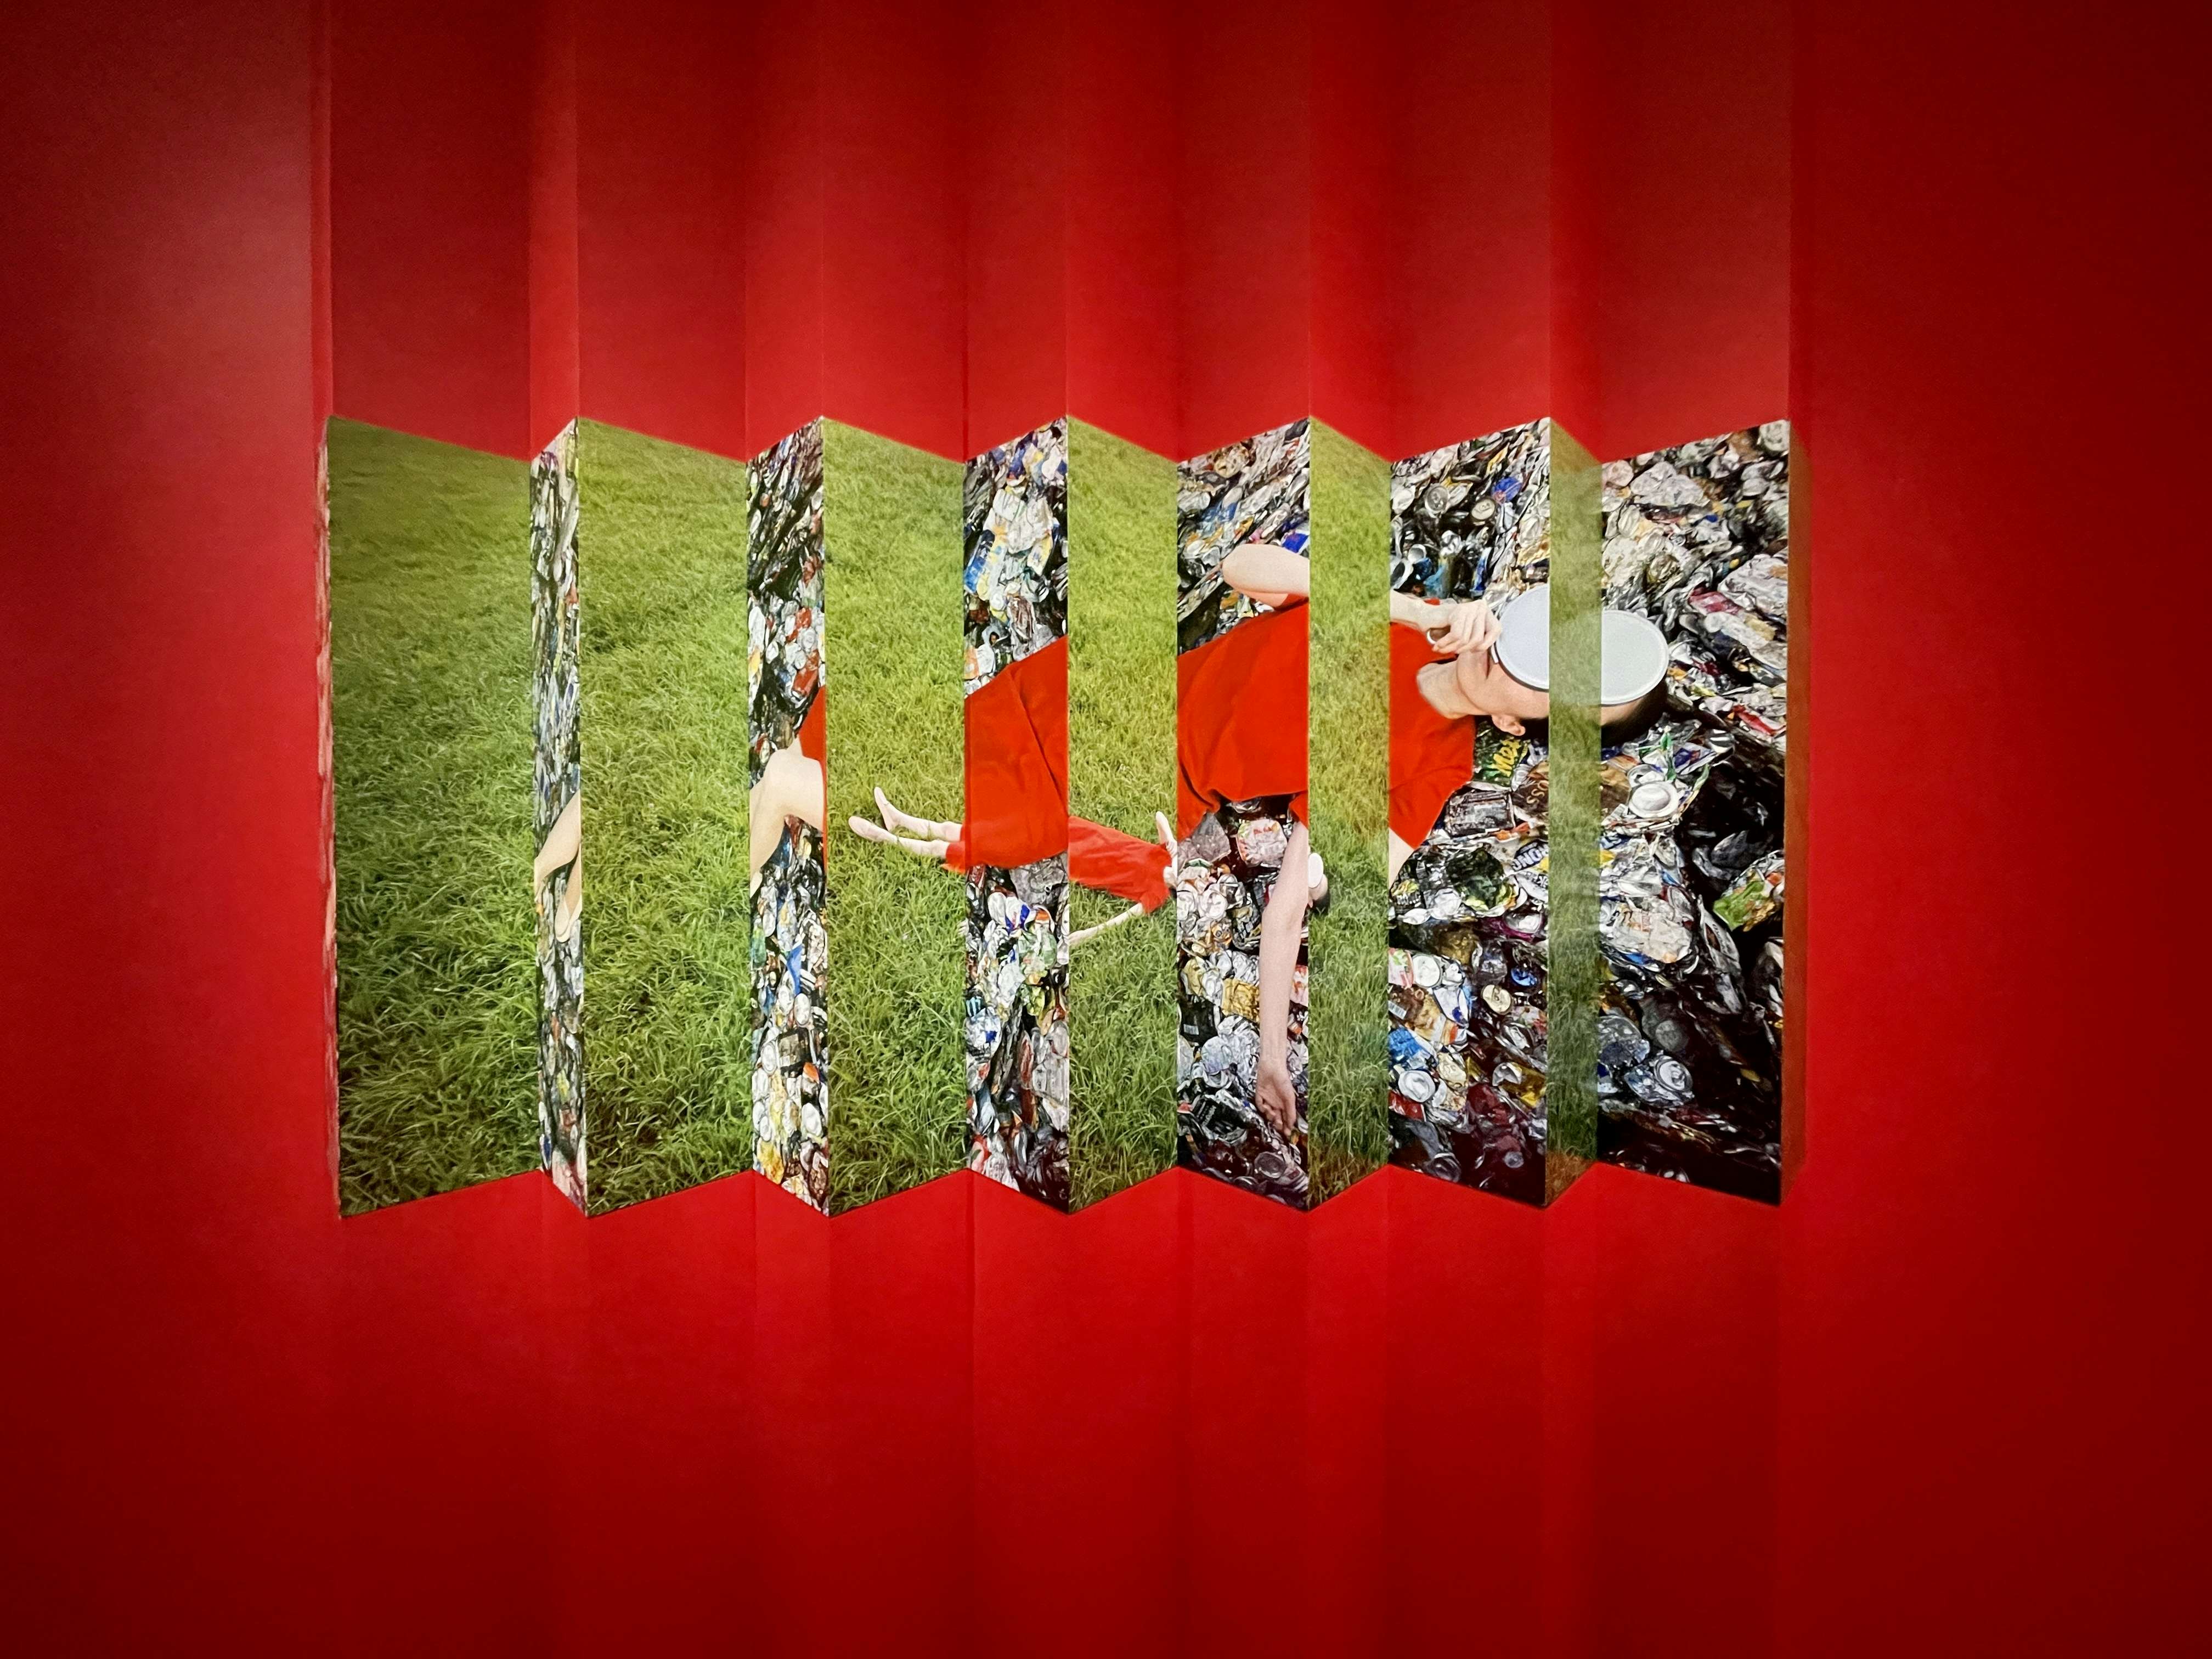 赤 から読み取るセルフポートレート 堀清英の個展 Red がシャネルで開幕 画像ギャラリー 3 10 美術手帖